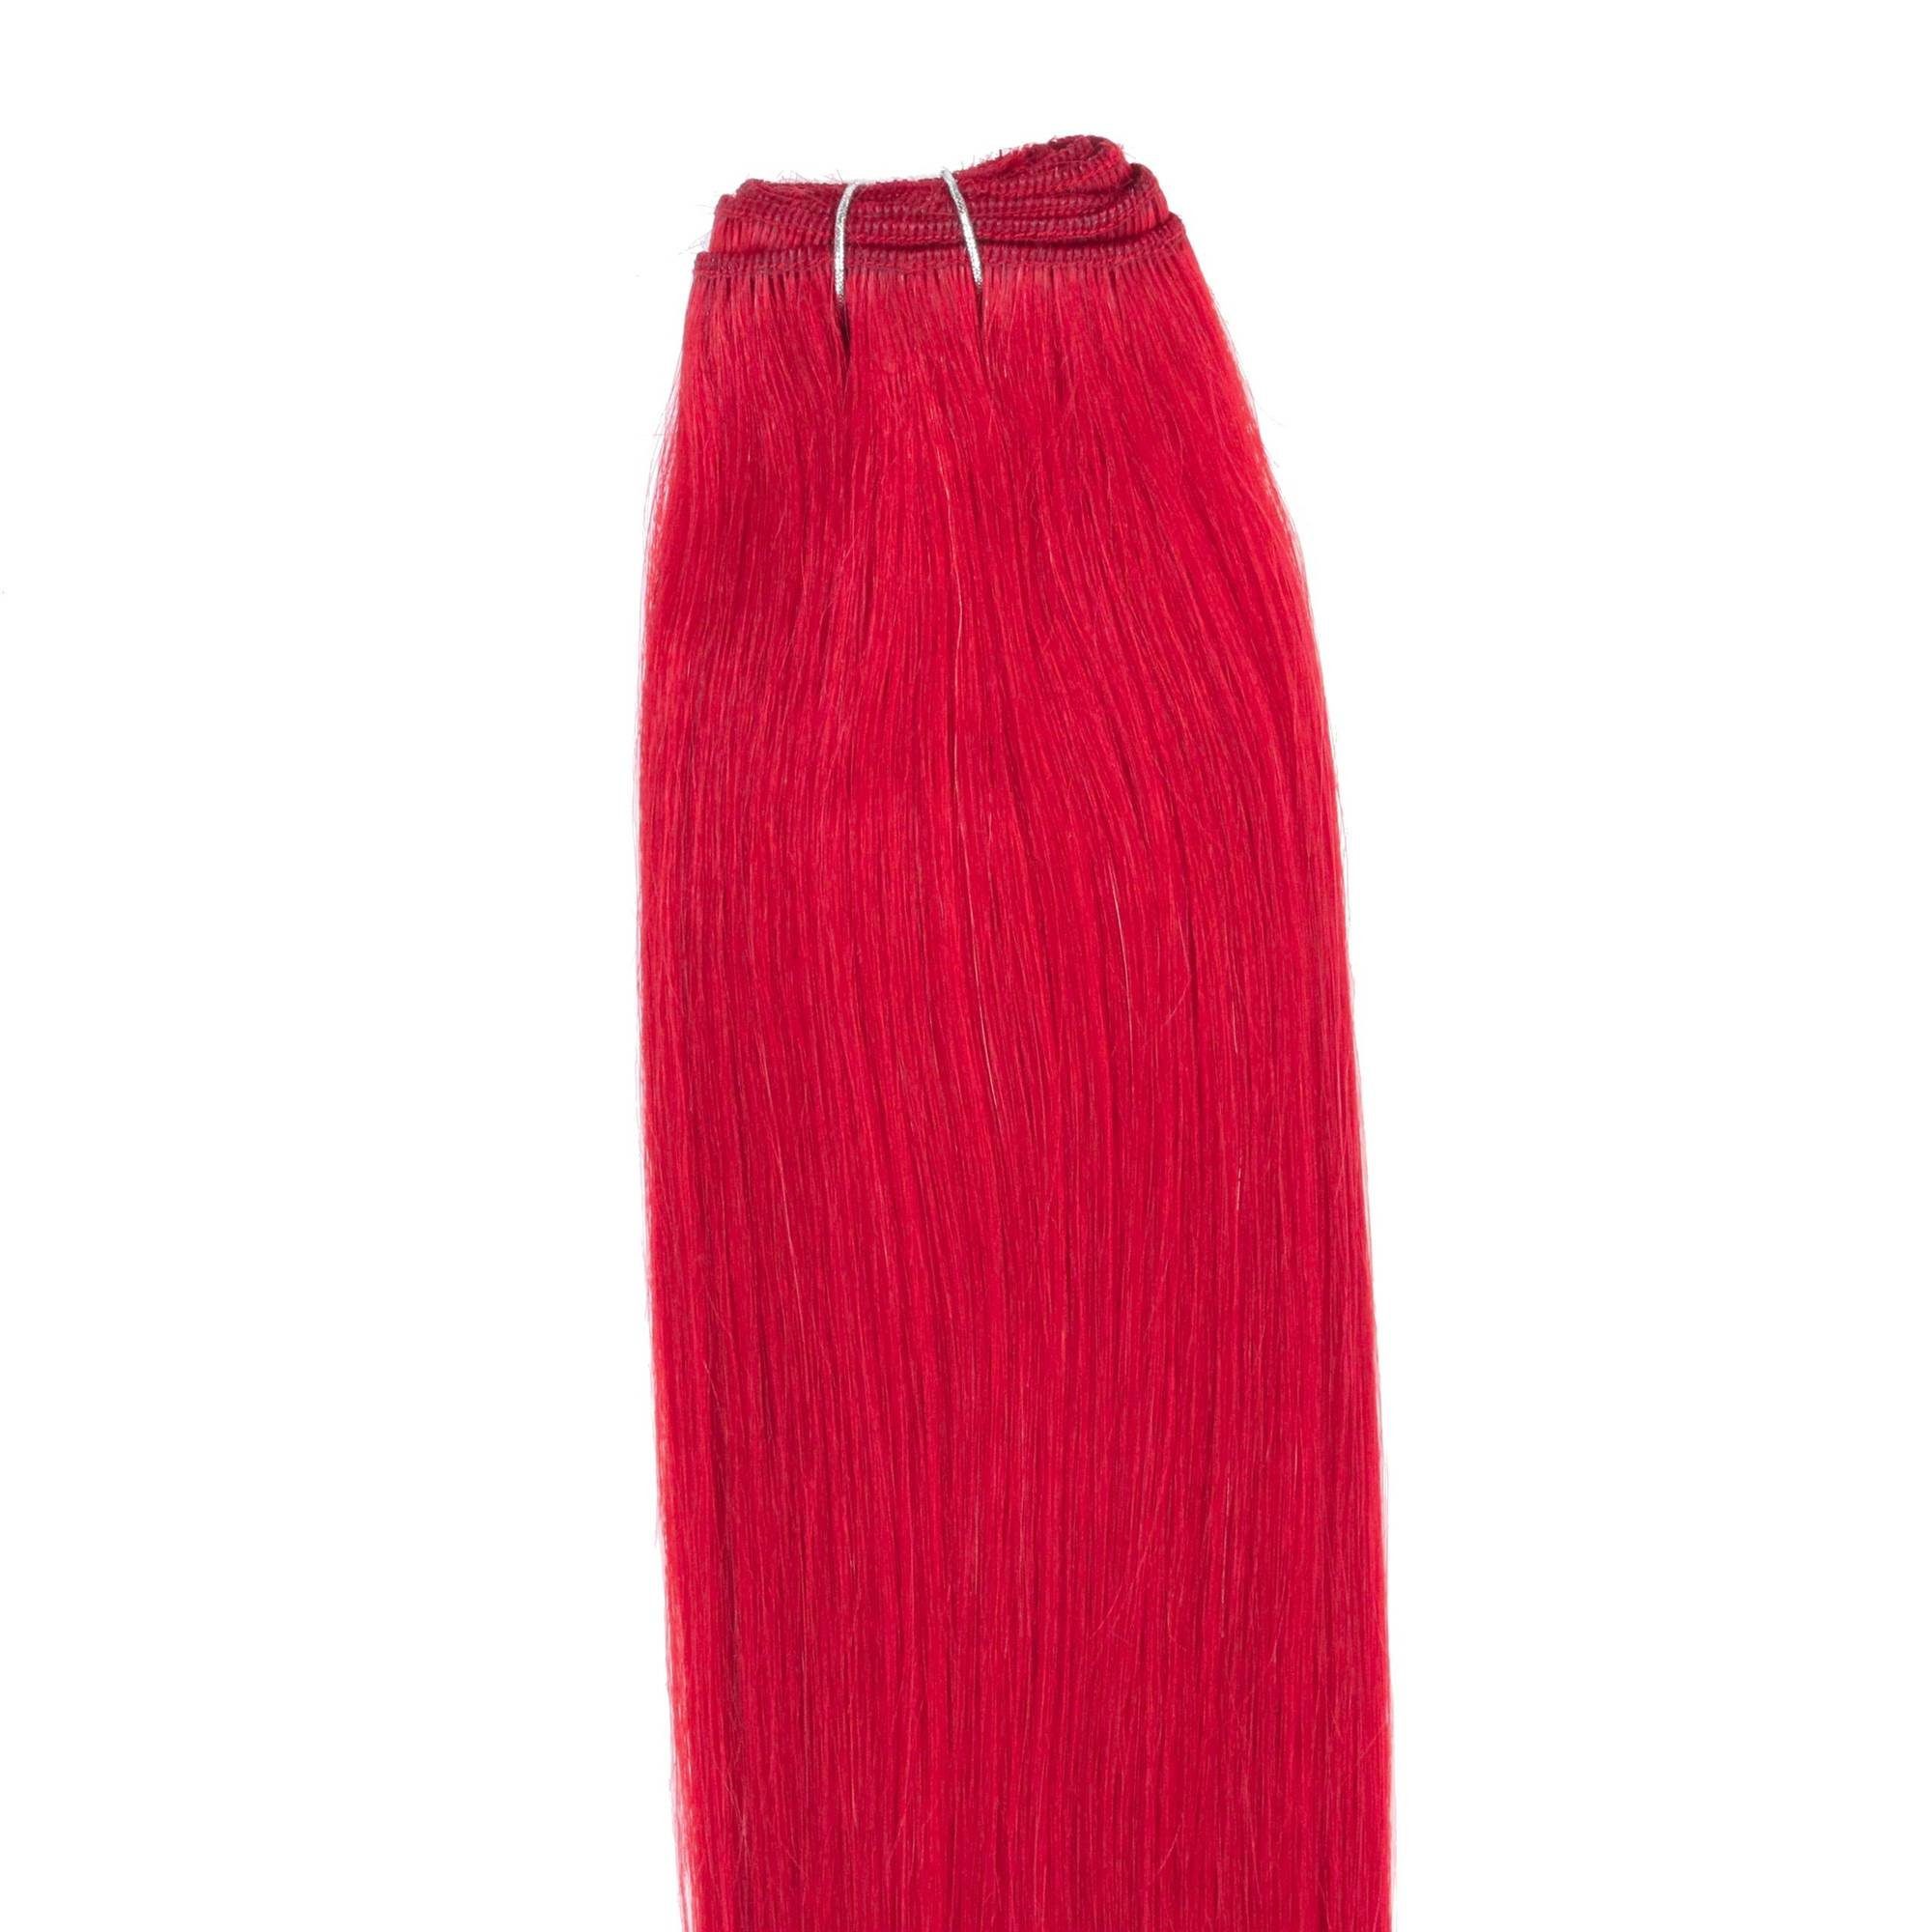 Echthaartresse Rot-Intensiv hair2heart Glatte Echthaar-Extension #0/44 40cm